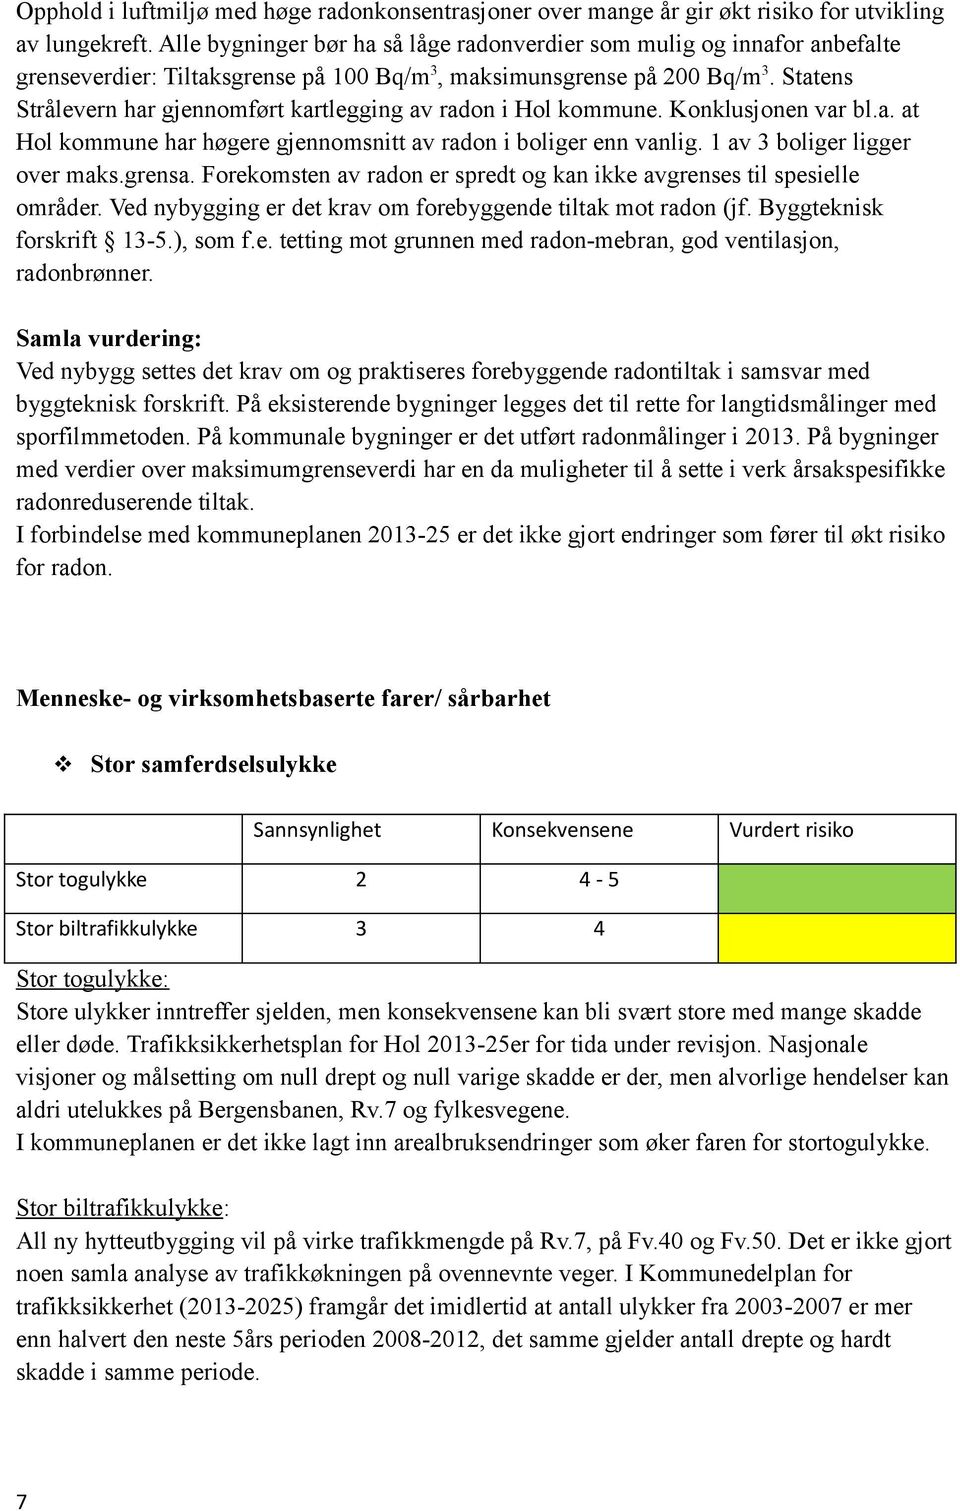 Statens Strålevern har gjennomført kartlegging av radon i Hol kommune. Konklusjonen var bl.a. at Hol kommune har høgere gjennomsnitt av radon i boliger enn vanlig. 1 av 3 boliger ligger over maks.